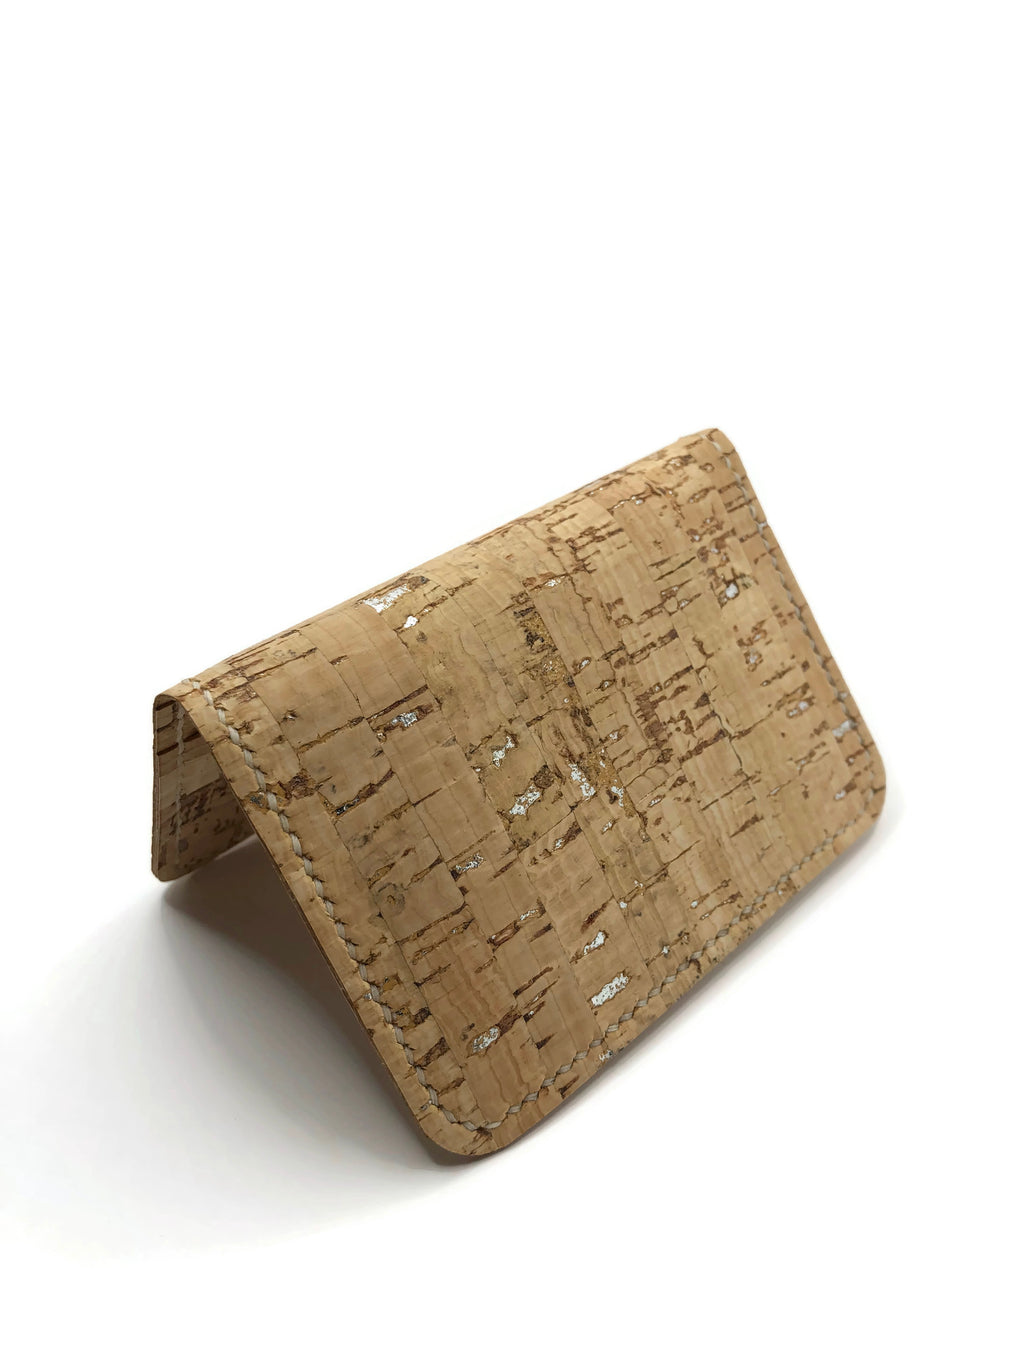 Card Sleeve • "The Classic" Cork Folding Card Sleeve